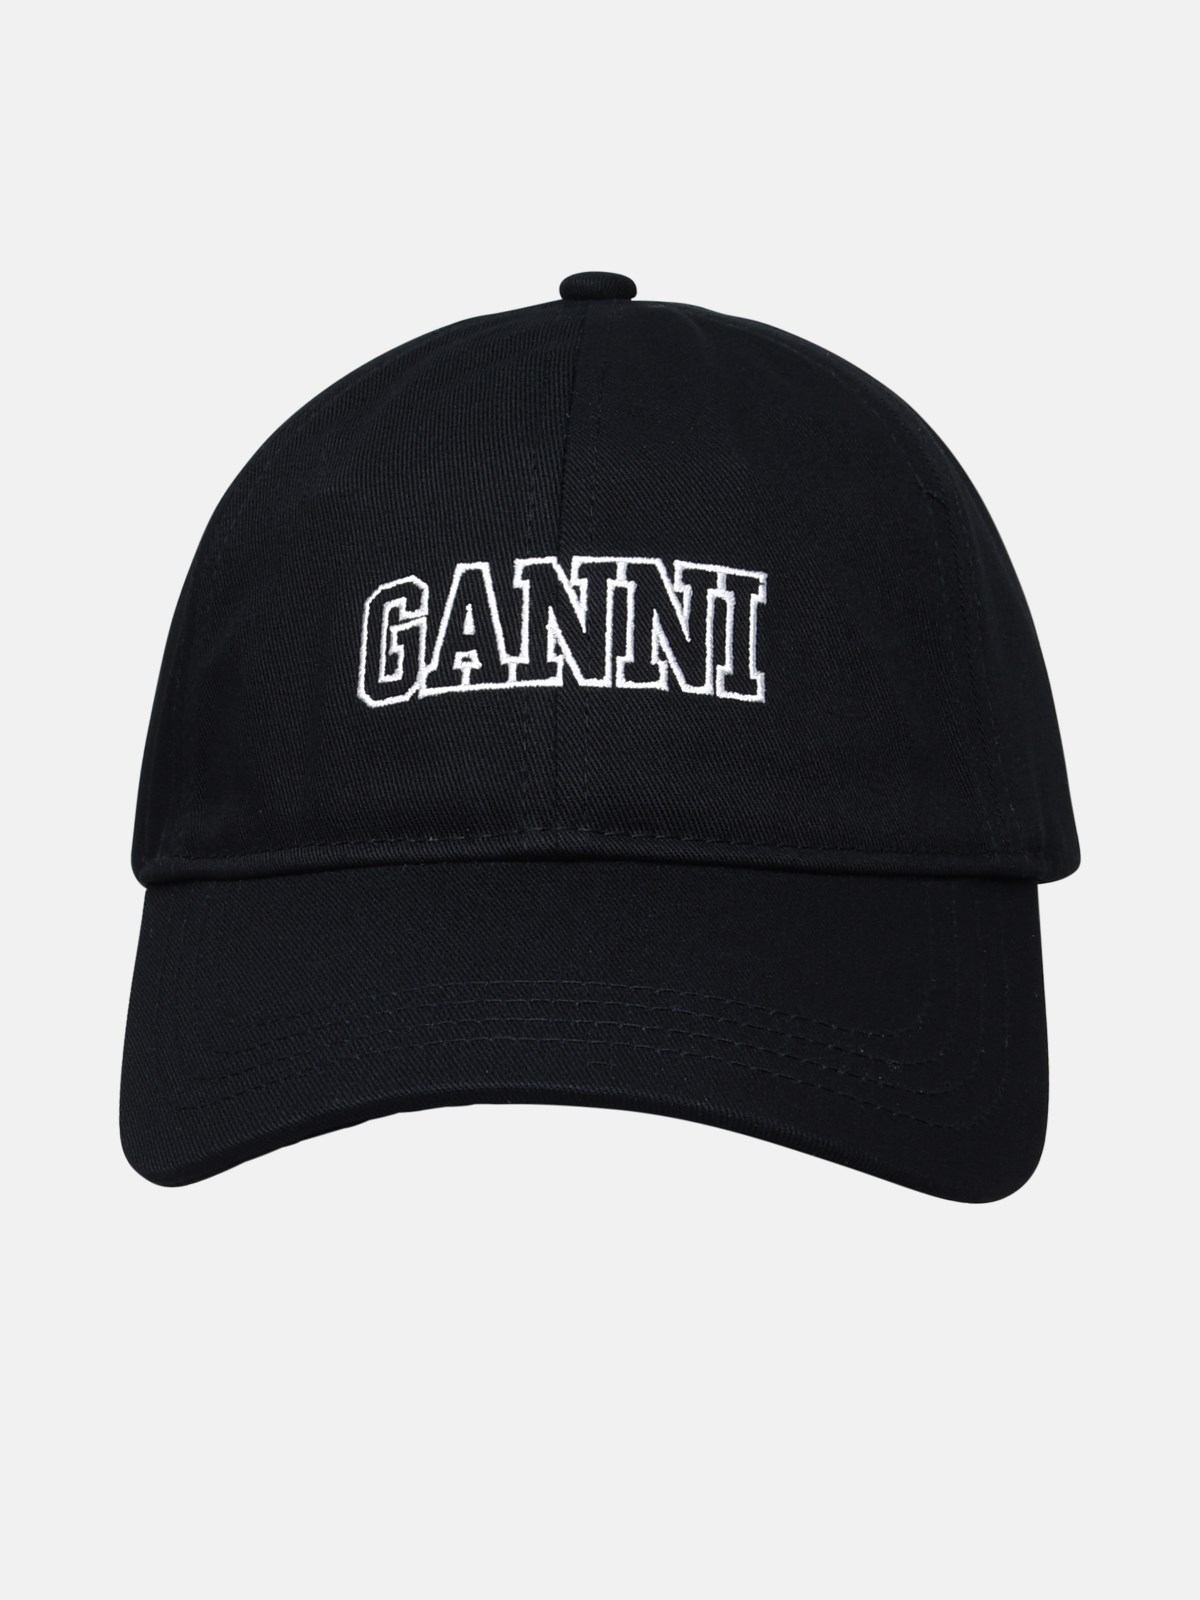 Ganni Black Cotton Hat